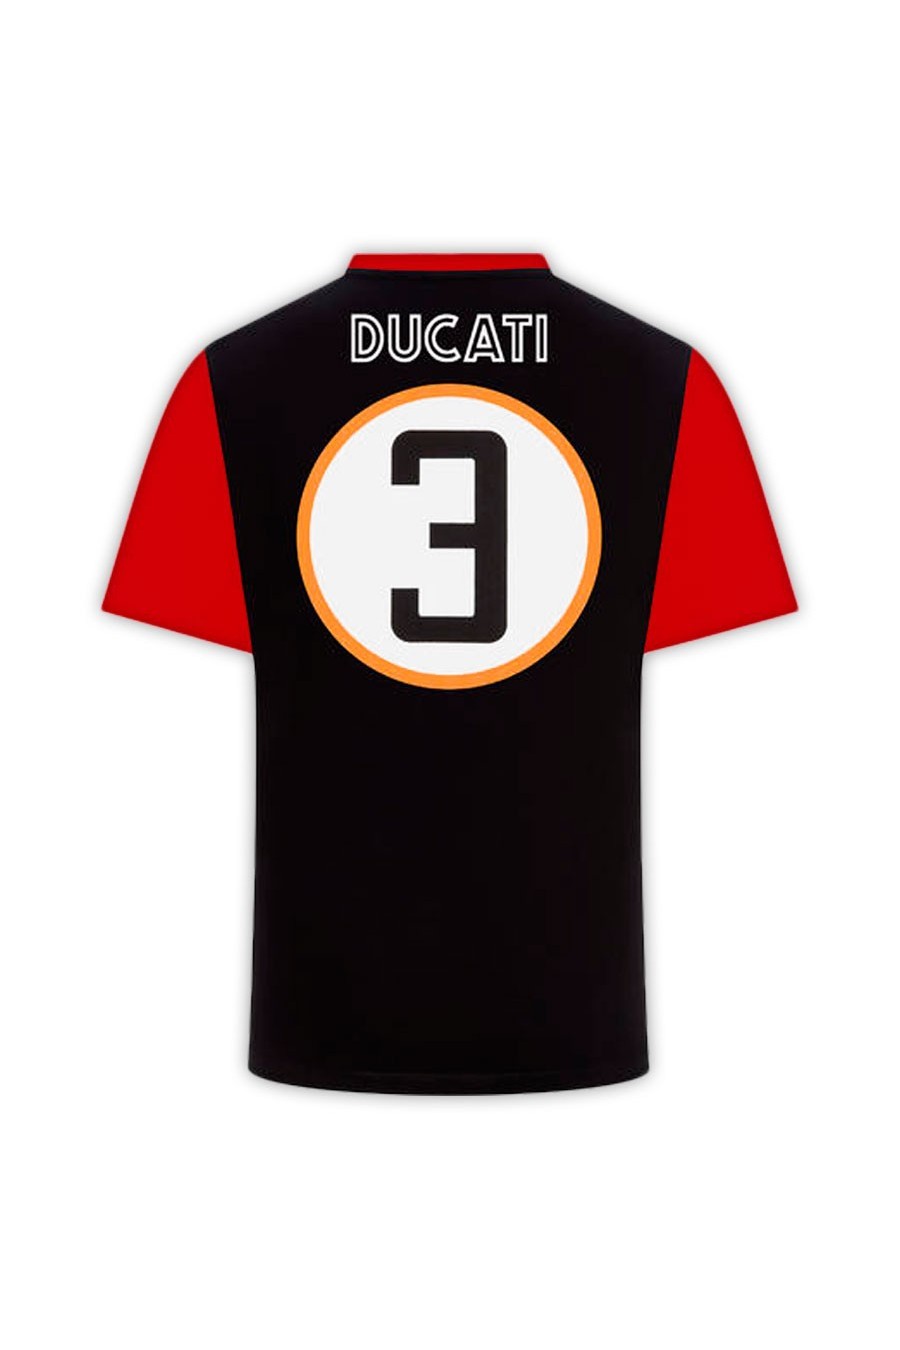 T-shirt Ducati History Desmo